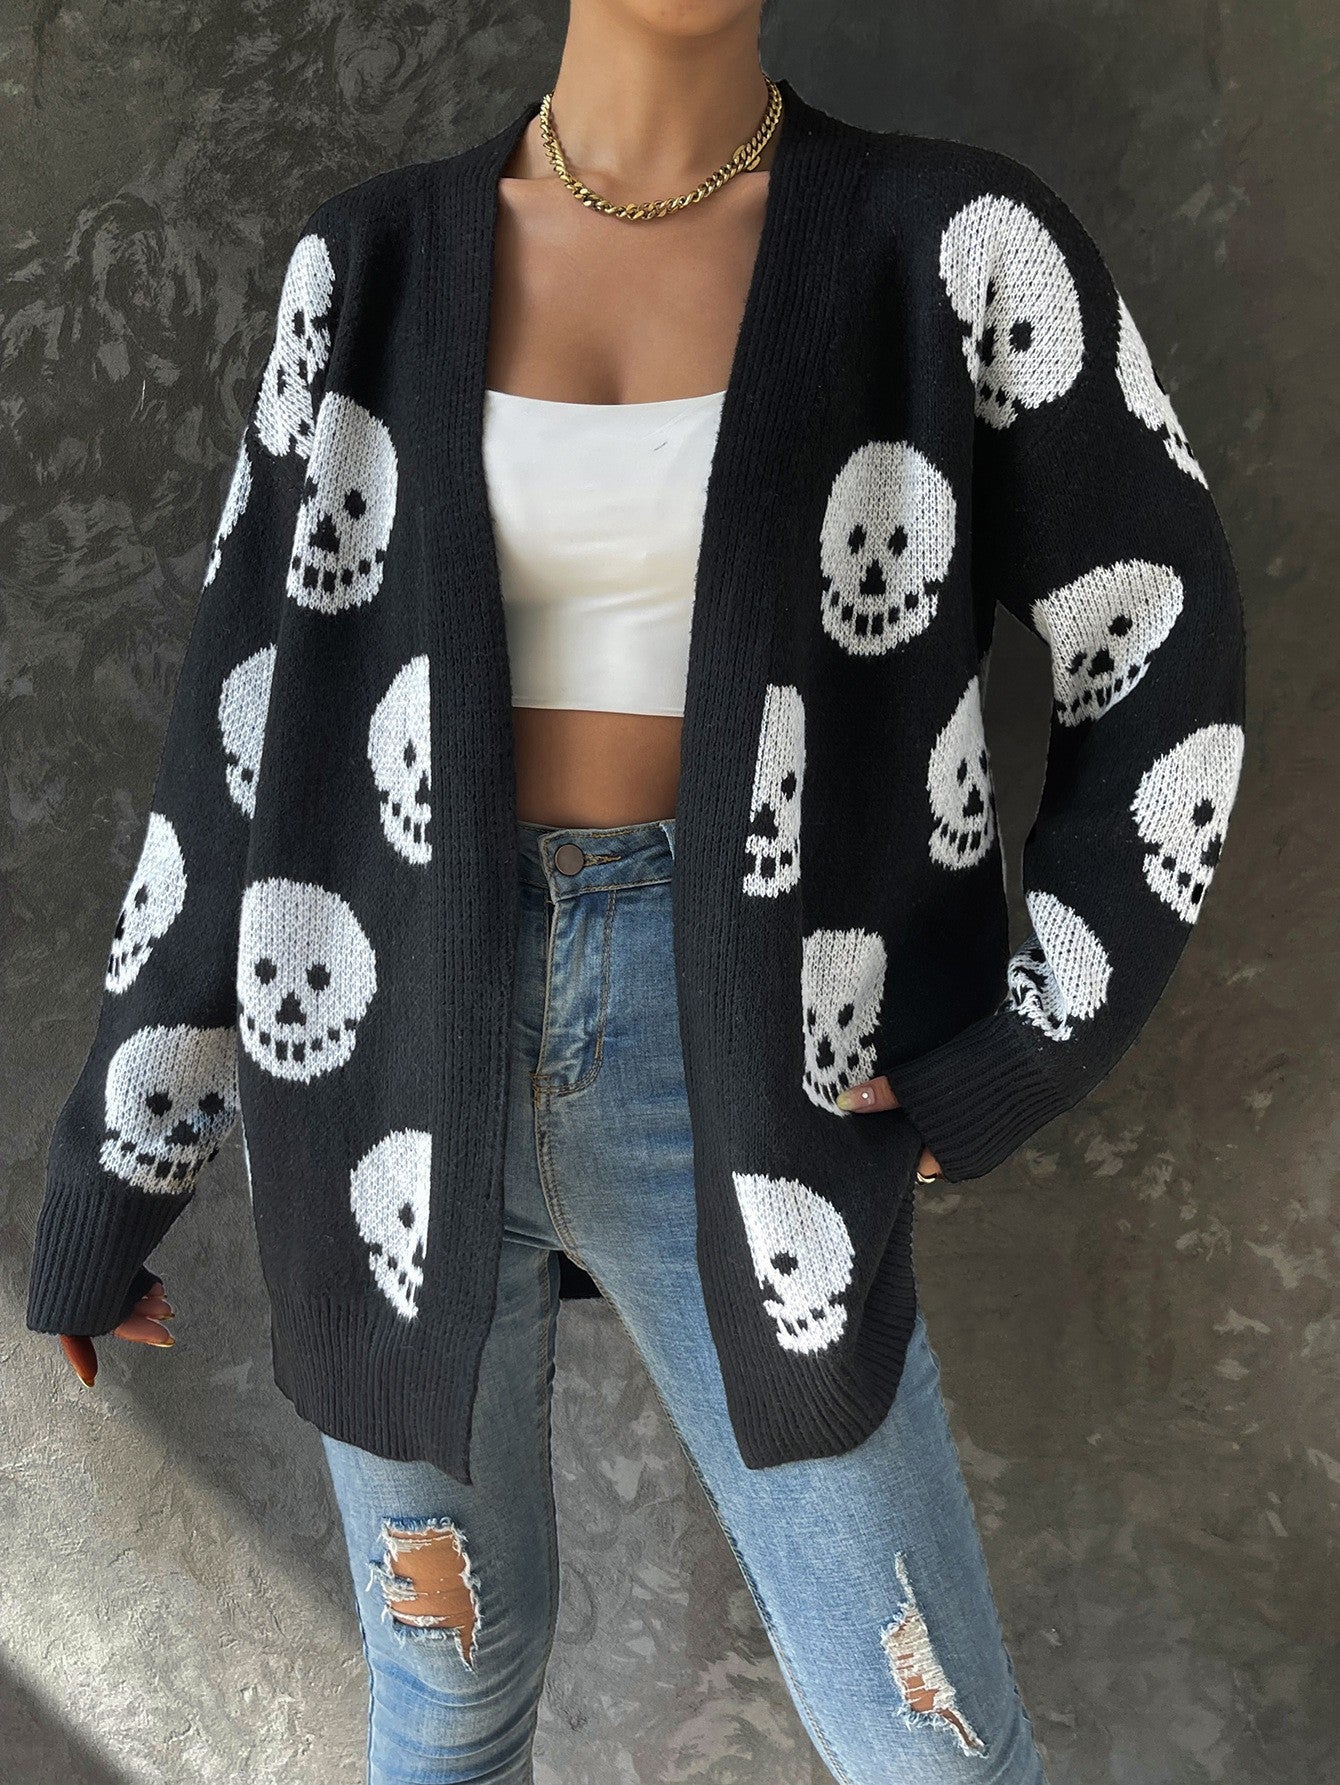 Women's Halloween Skull Jacquard Knitted Long Sleeve Knitwear